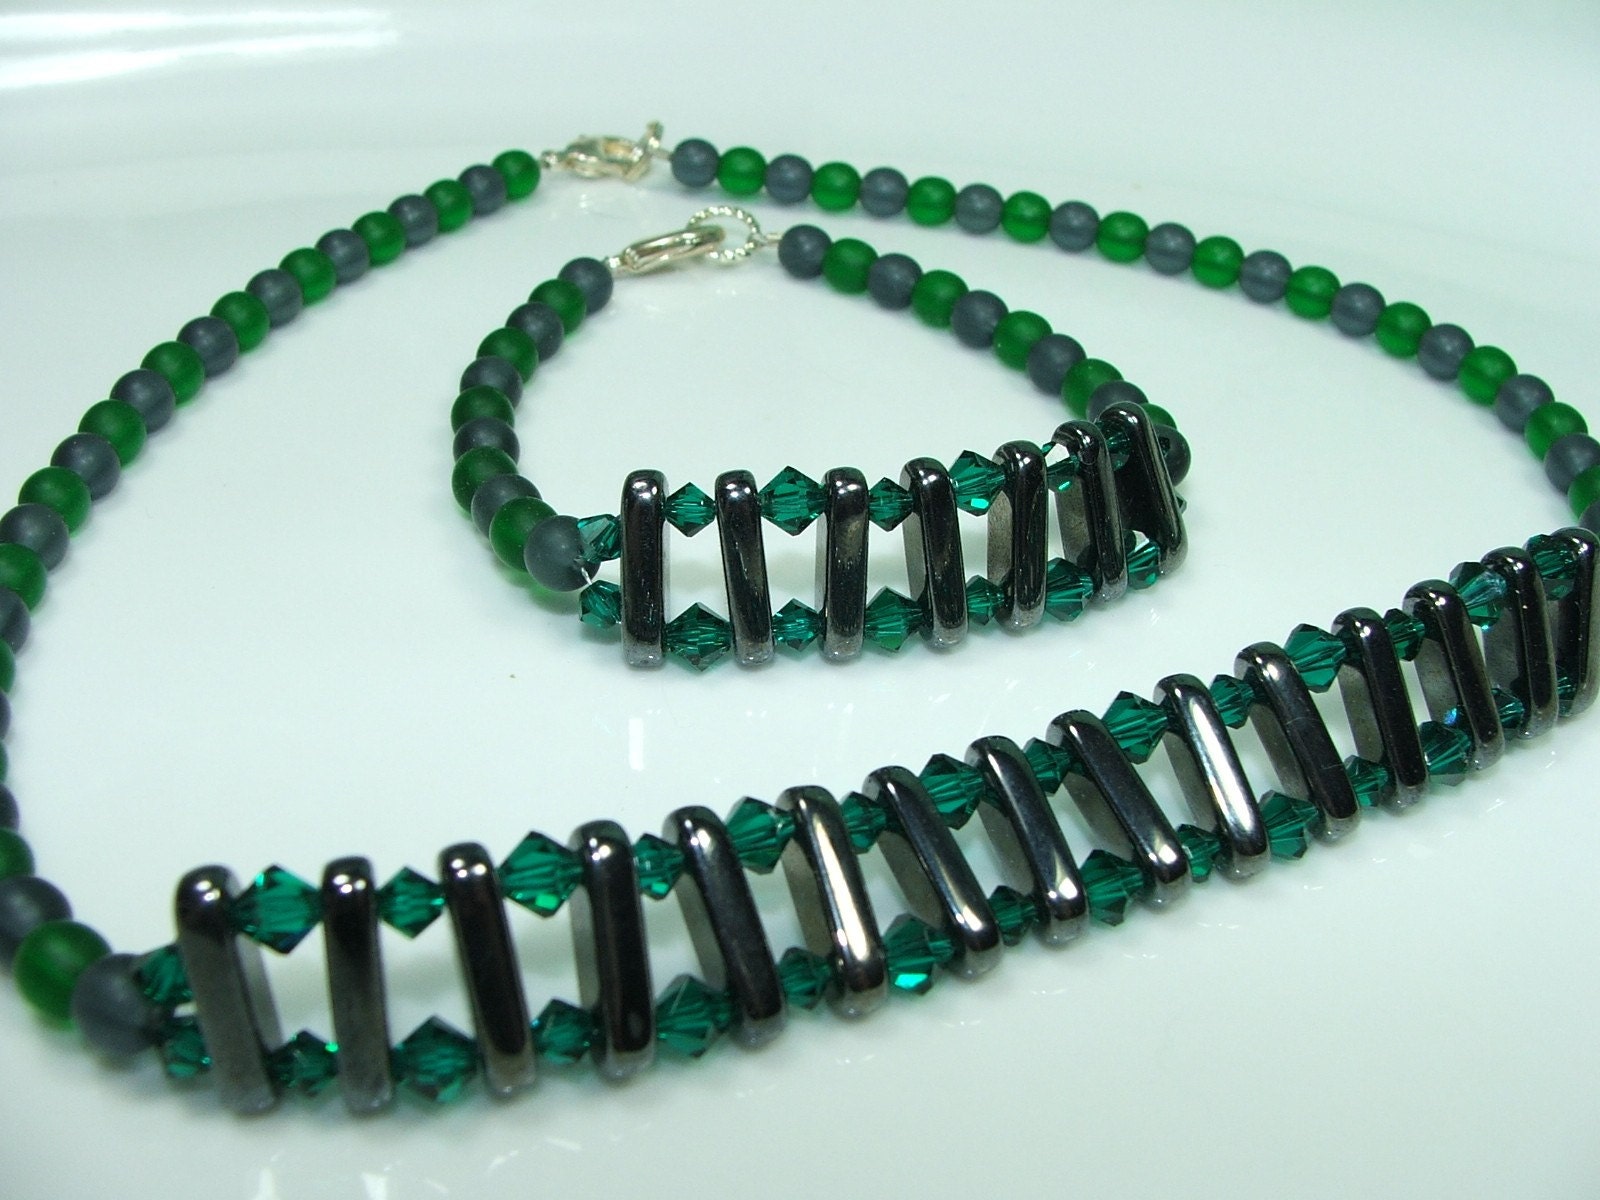 Emerald river necklace bracelet set